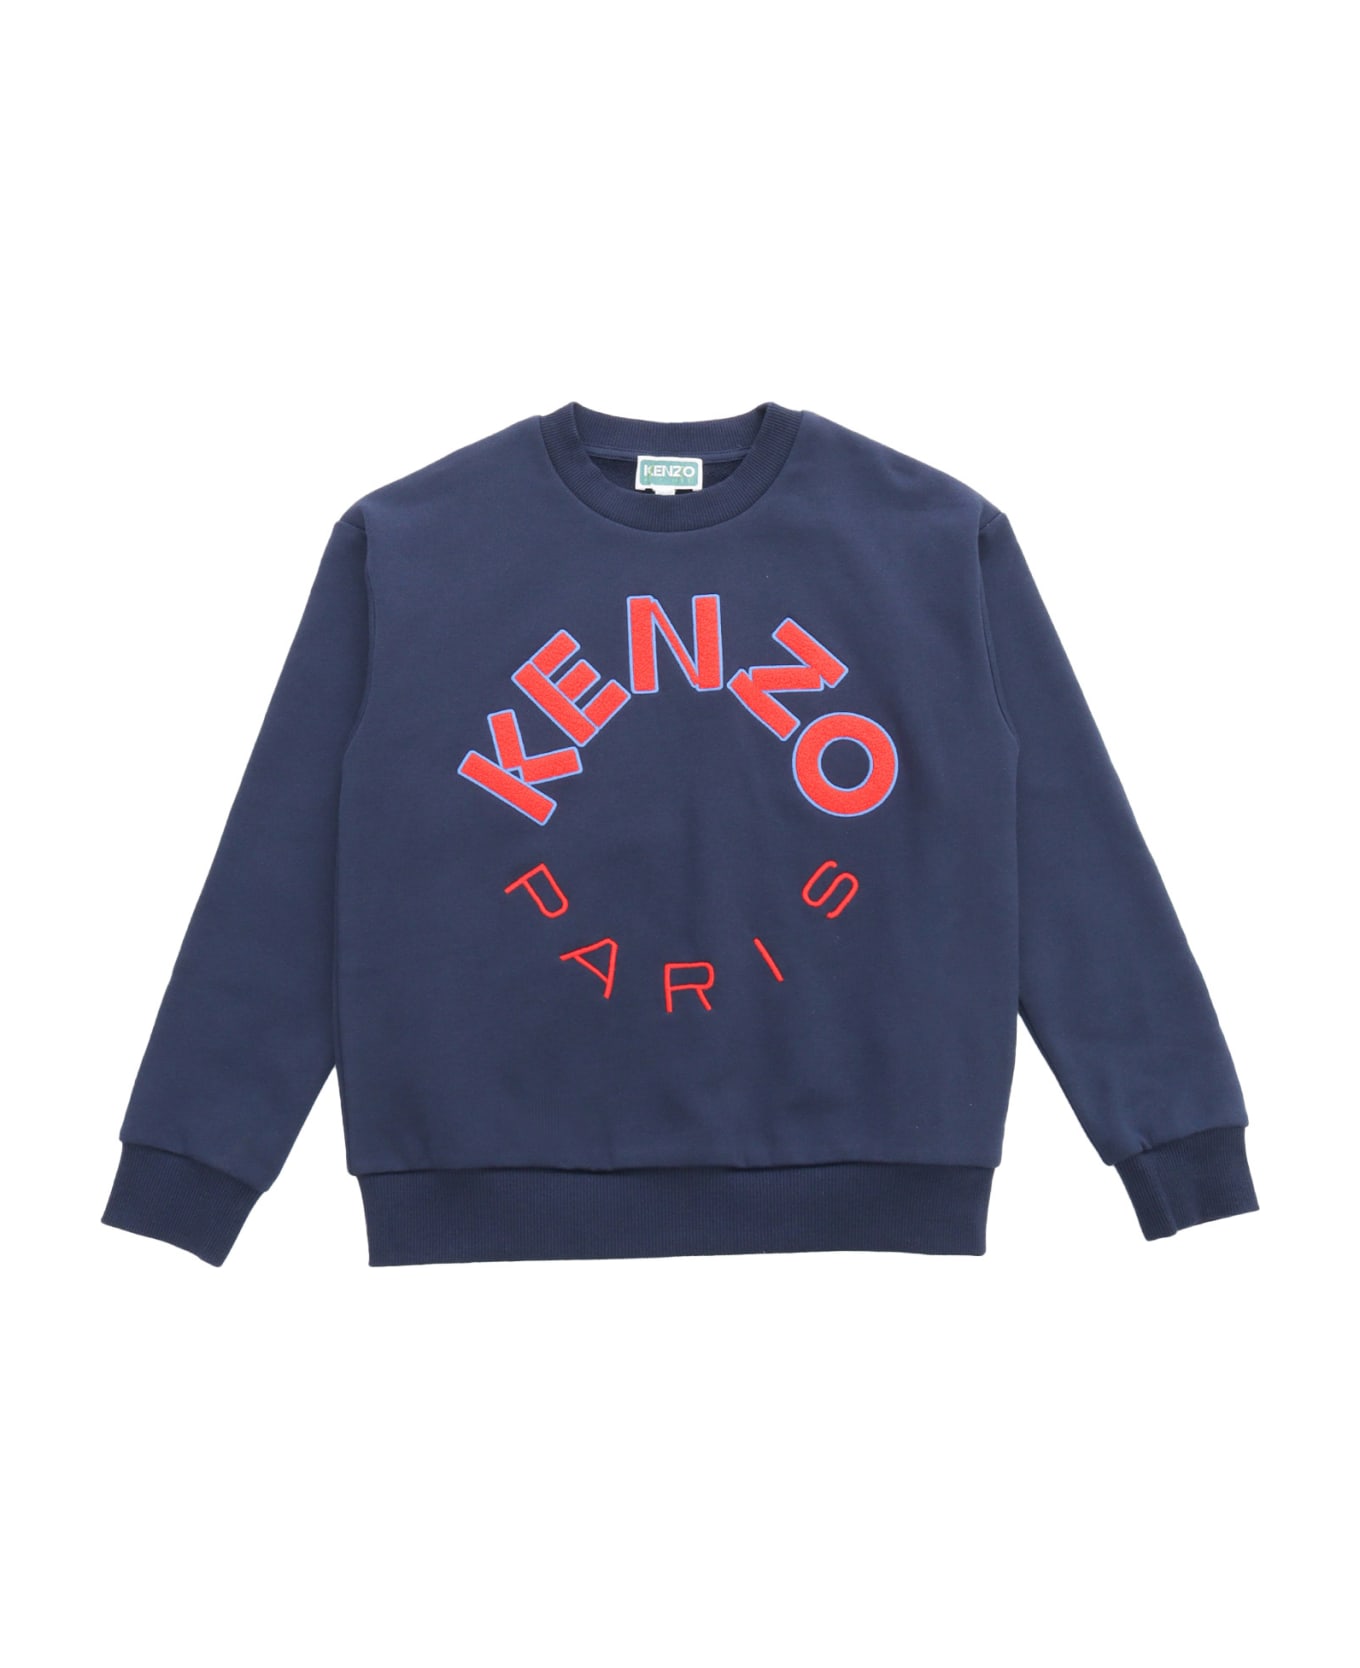 Kenzo Kids Blue Sweatshirt - BLUE